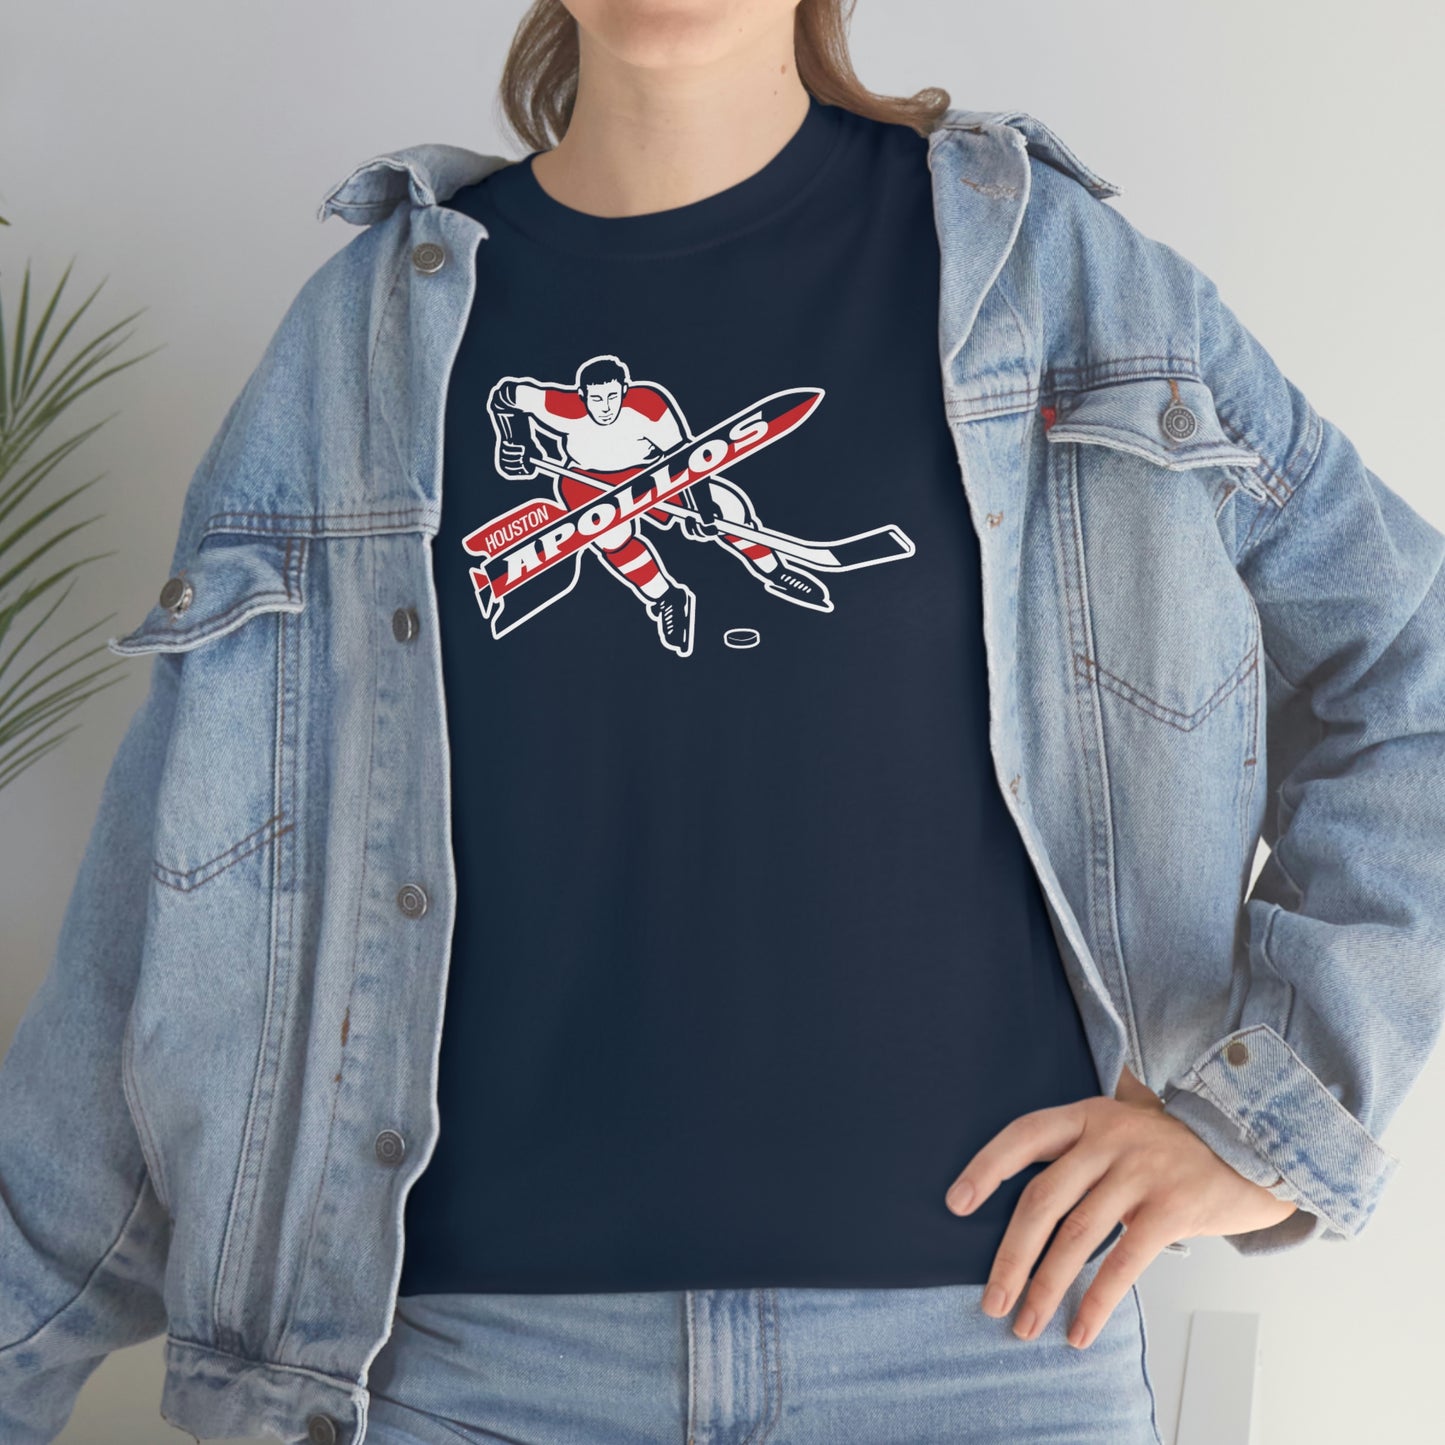 Houston Apollos T-Shirt